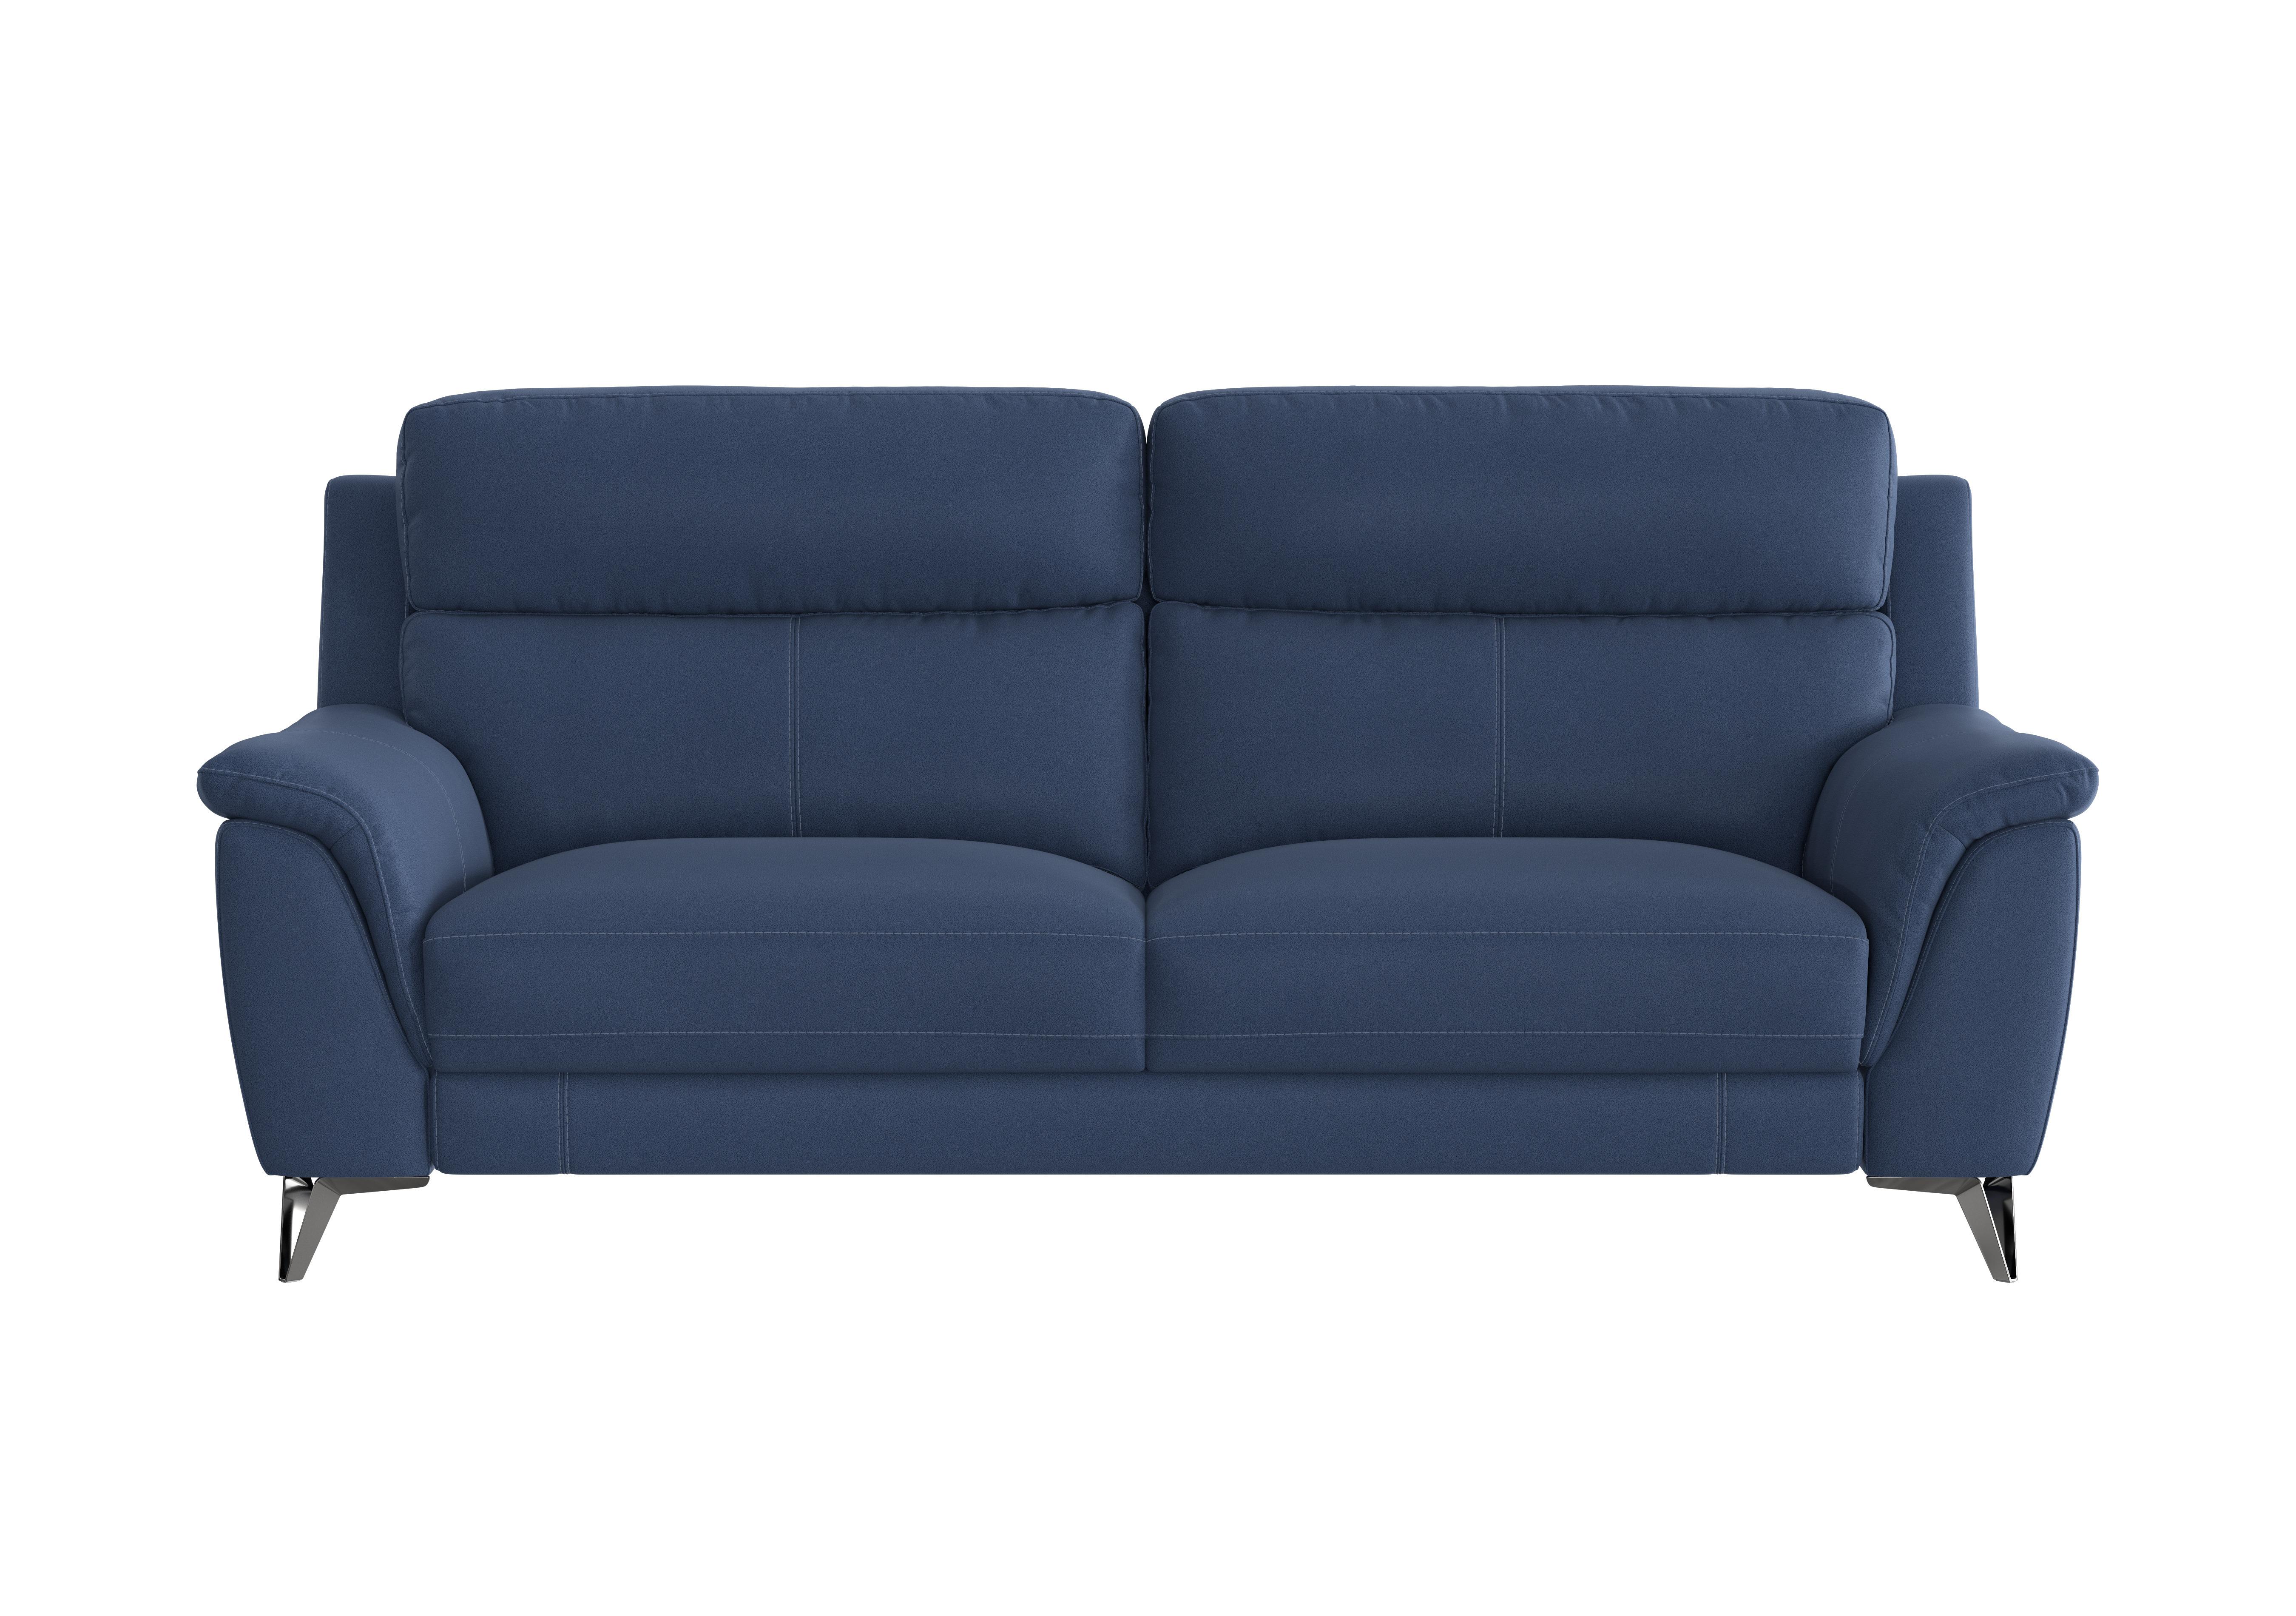 Contempo 3 Seater Fabric Sofa in Bfa-Blj-R10 Blue on Furniture Village